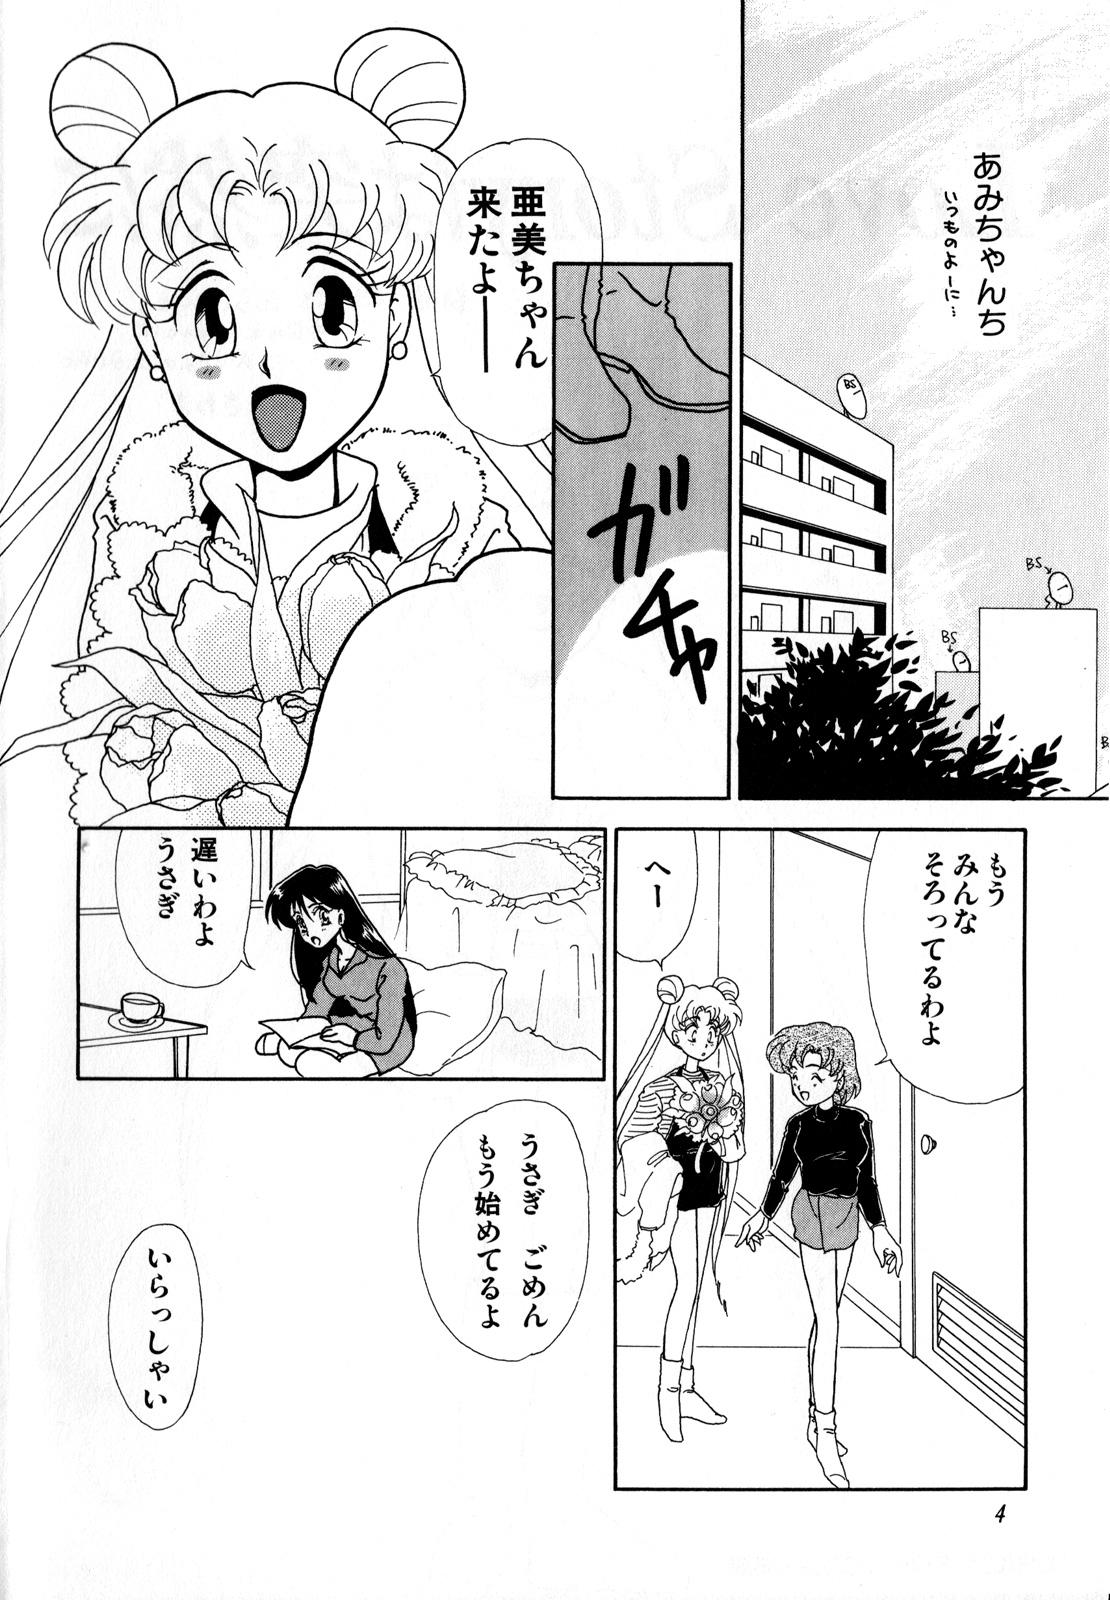 Bondagesex Lunatic Party 3 - Sailor moon Abg - Page 5